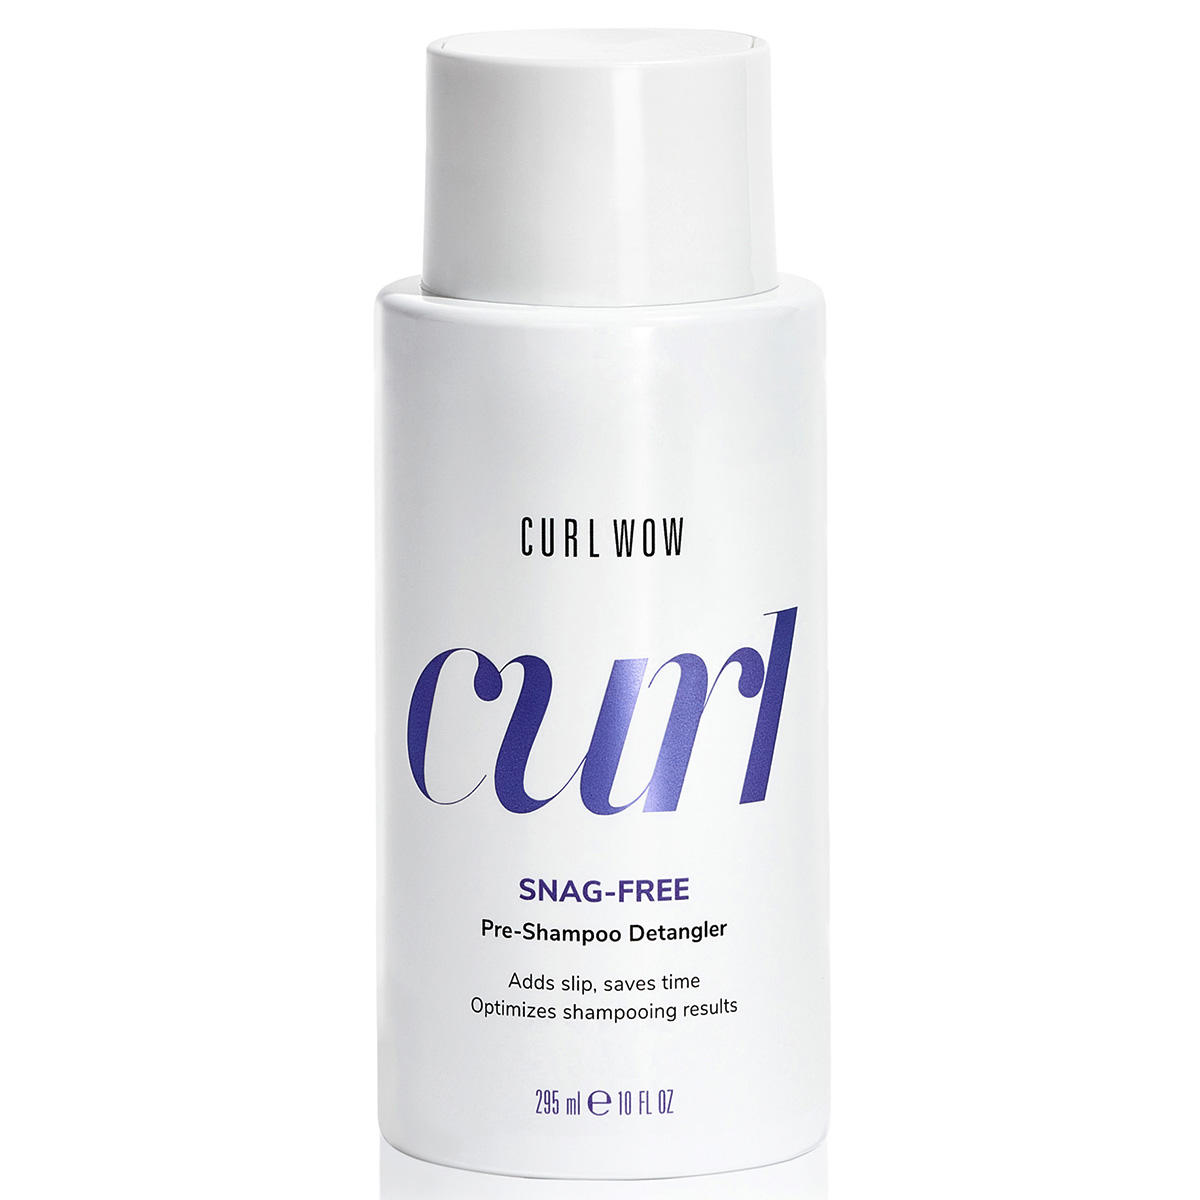 color wow curl snag-free pre-shampoo detangler 295 ml